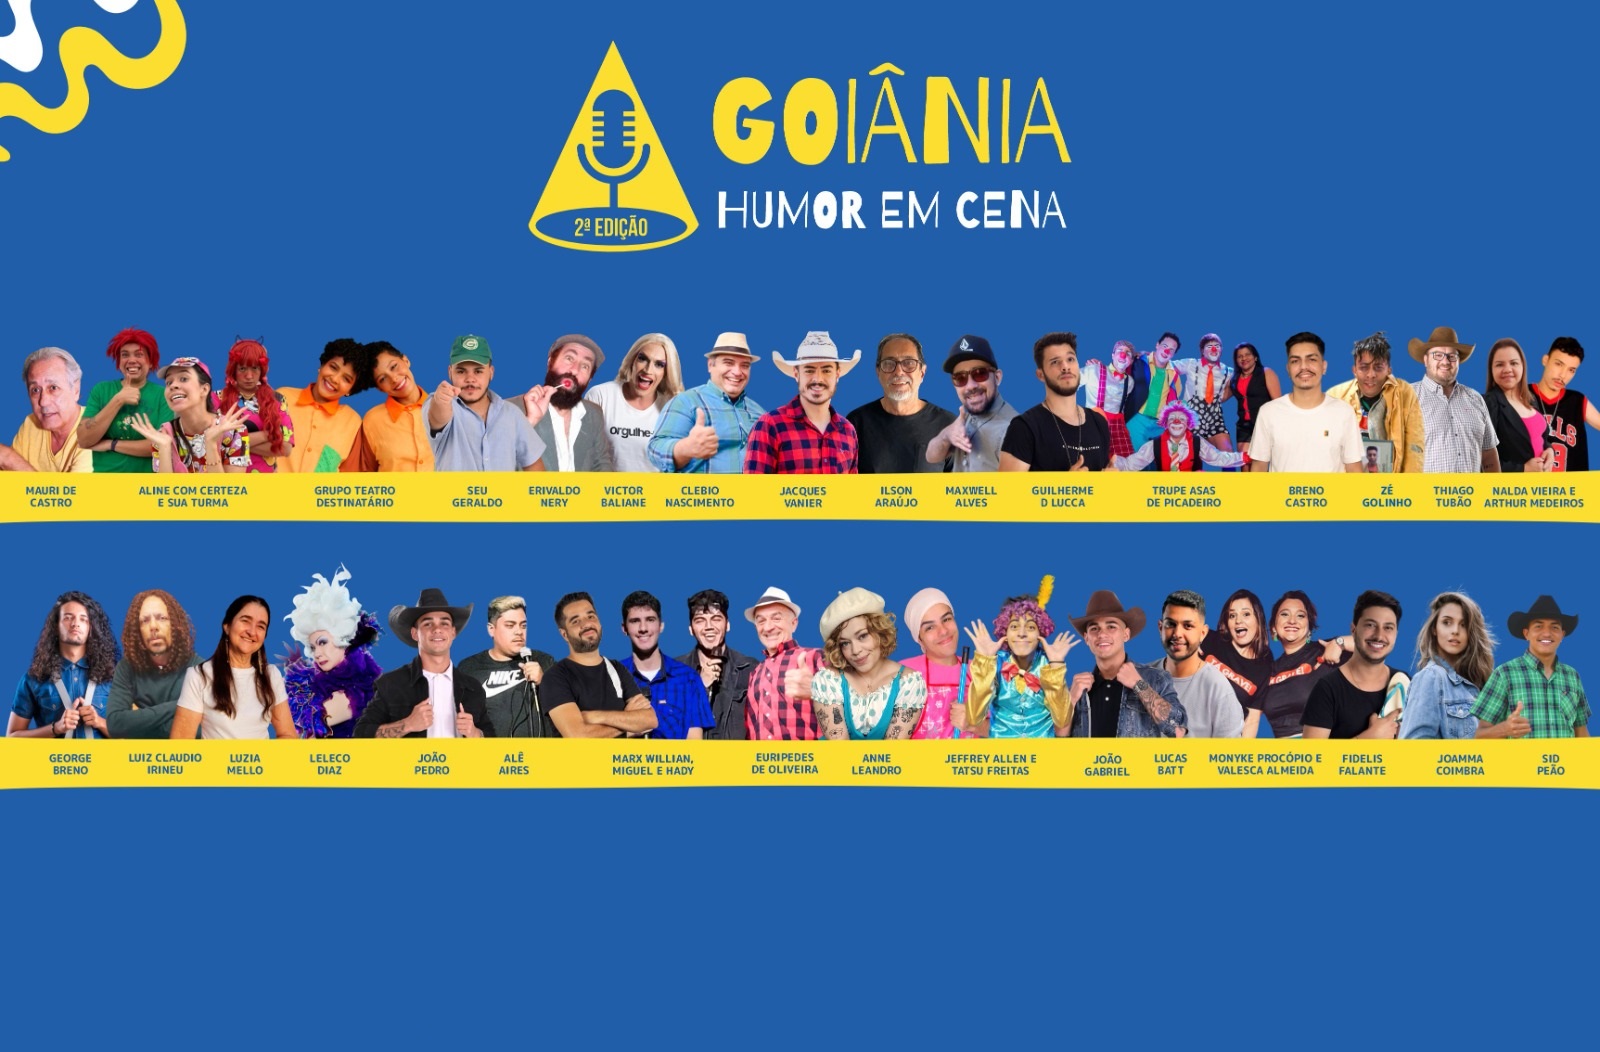 Atrações do Goiânia Festival Humor em Cena | Foto: Divulgação